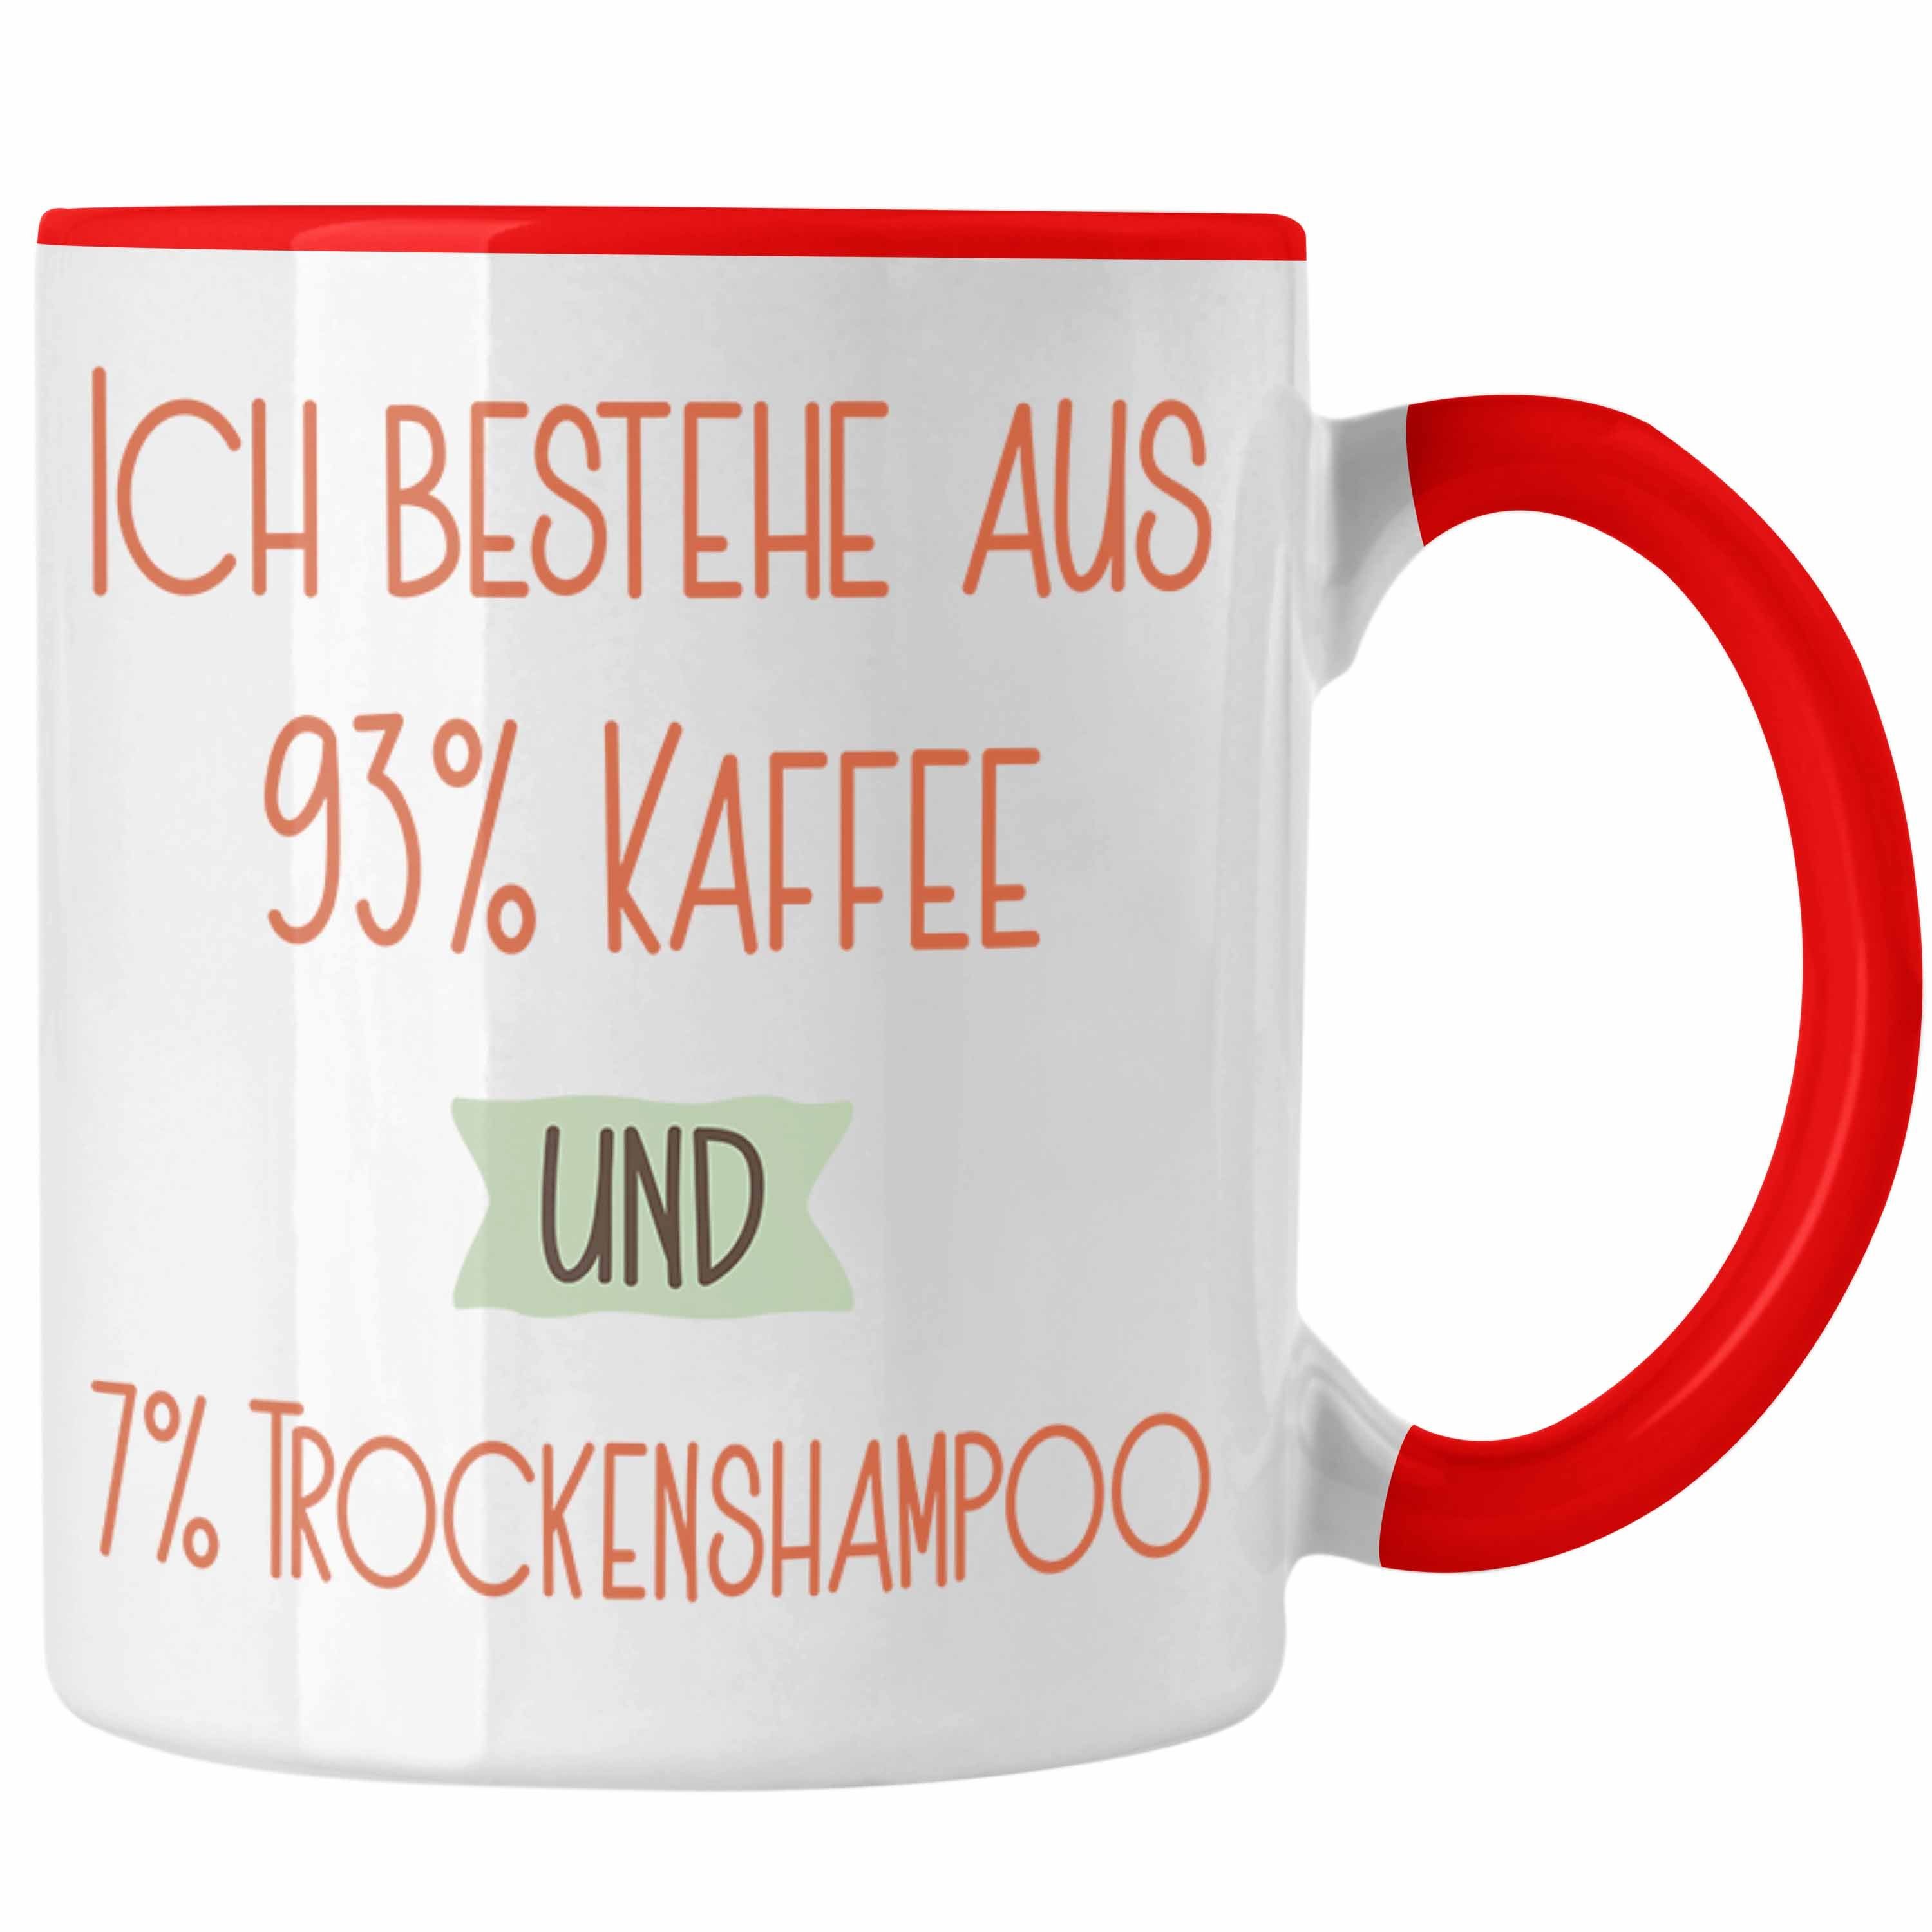 Trendation Tasse 93% Kaffee und 7% Trockenshampoo Tasse Geschenk Lustiger Spruch Für Ko Rot